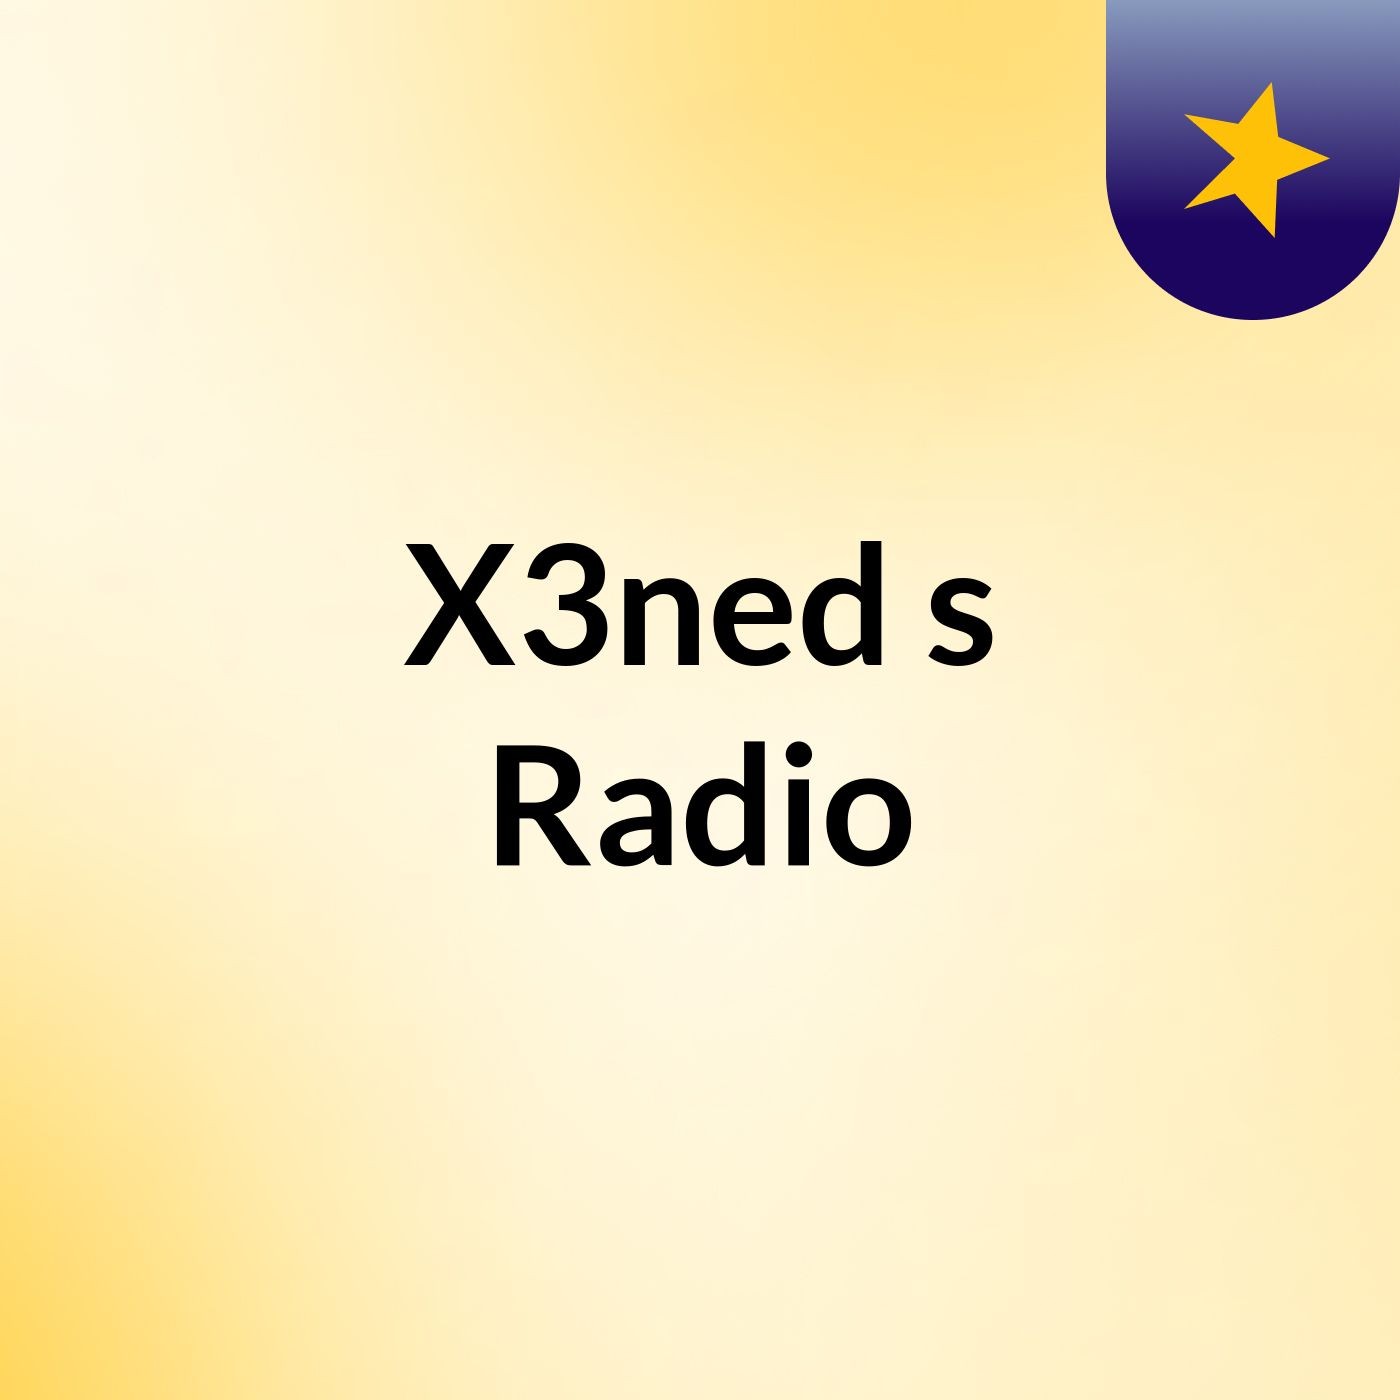 X3ned's Radio